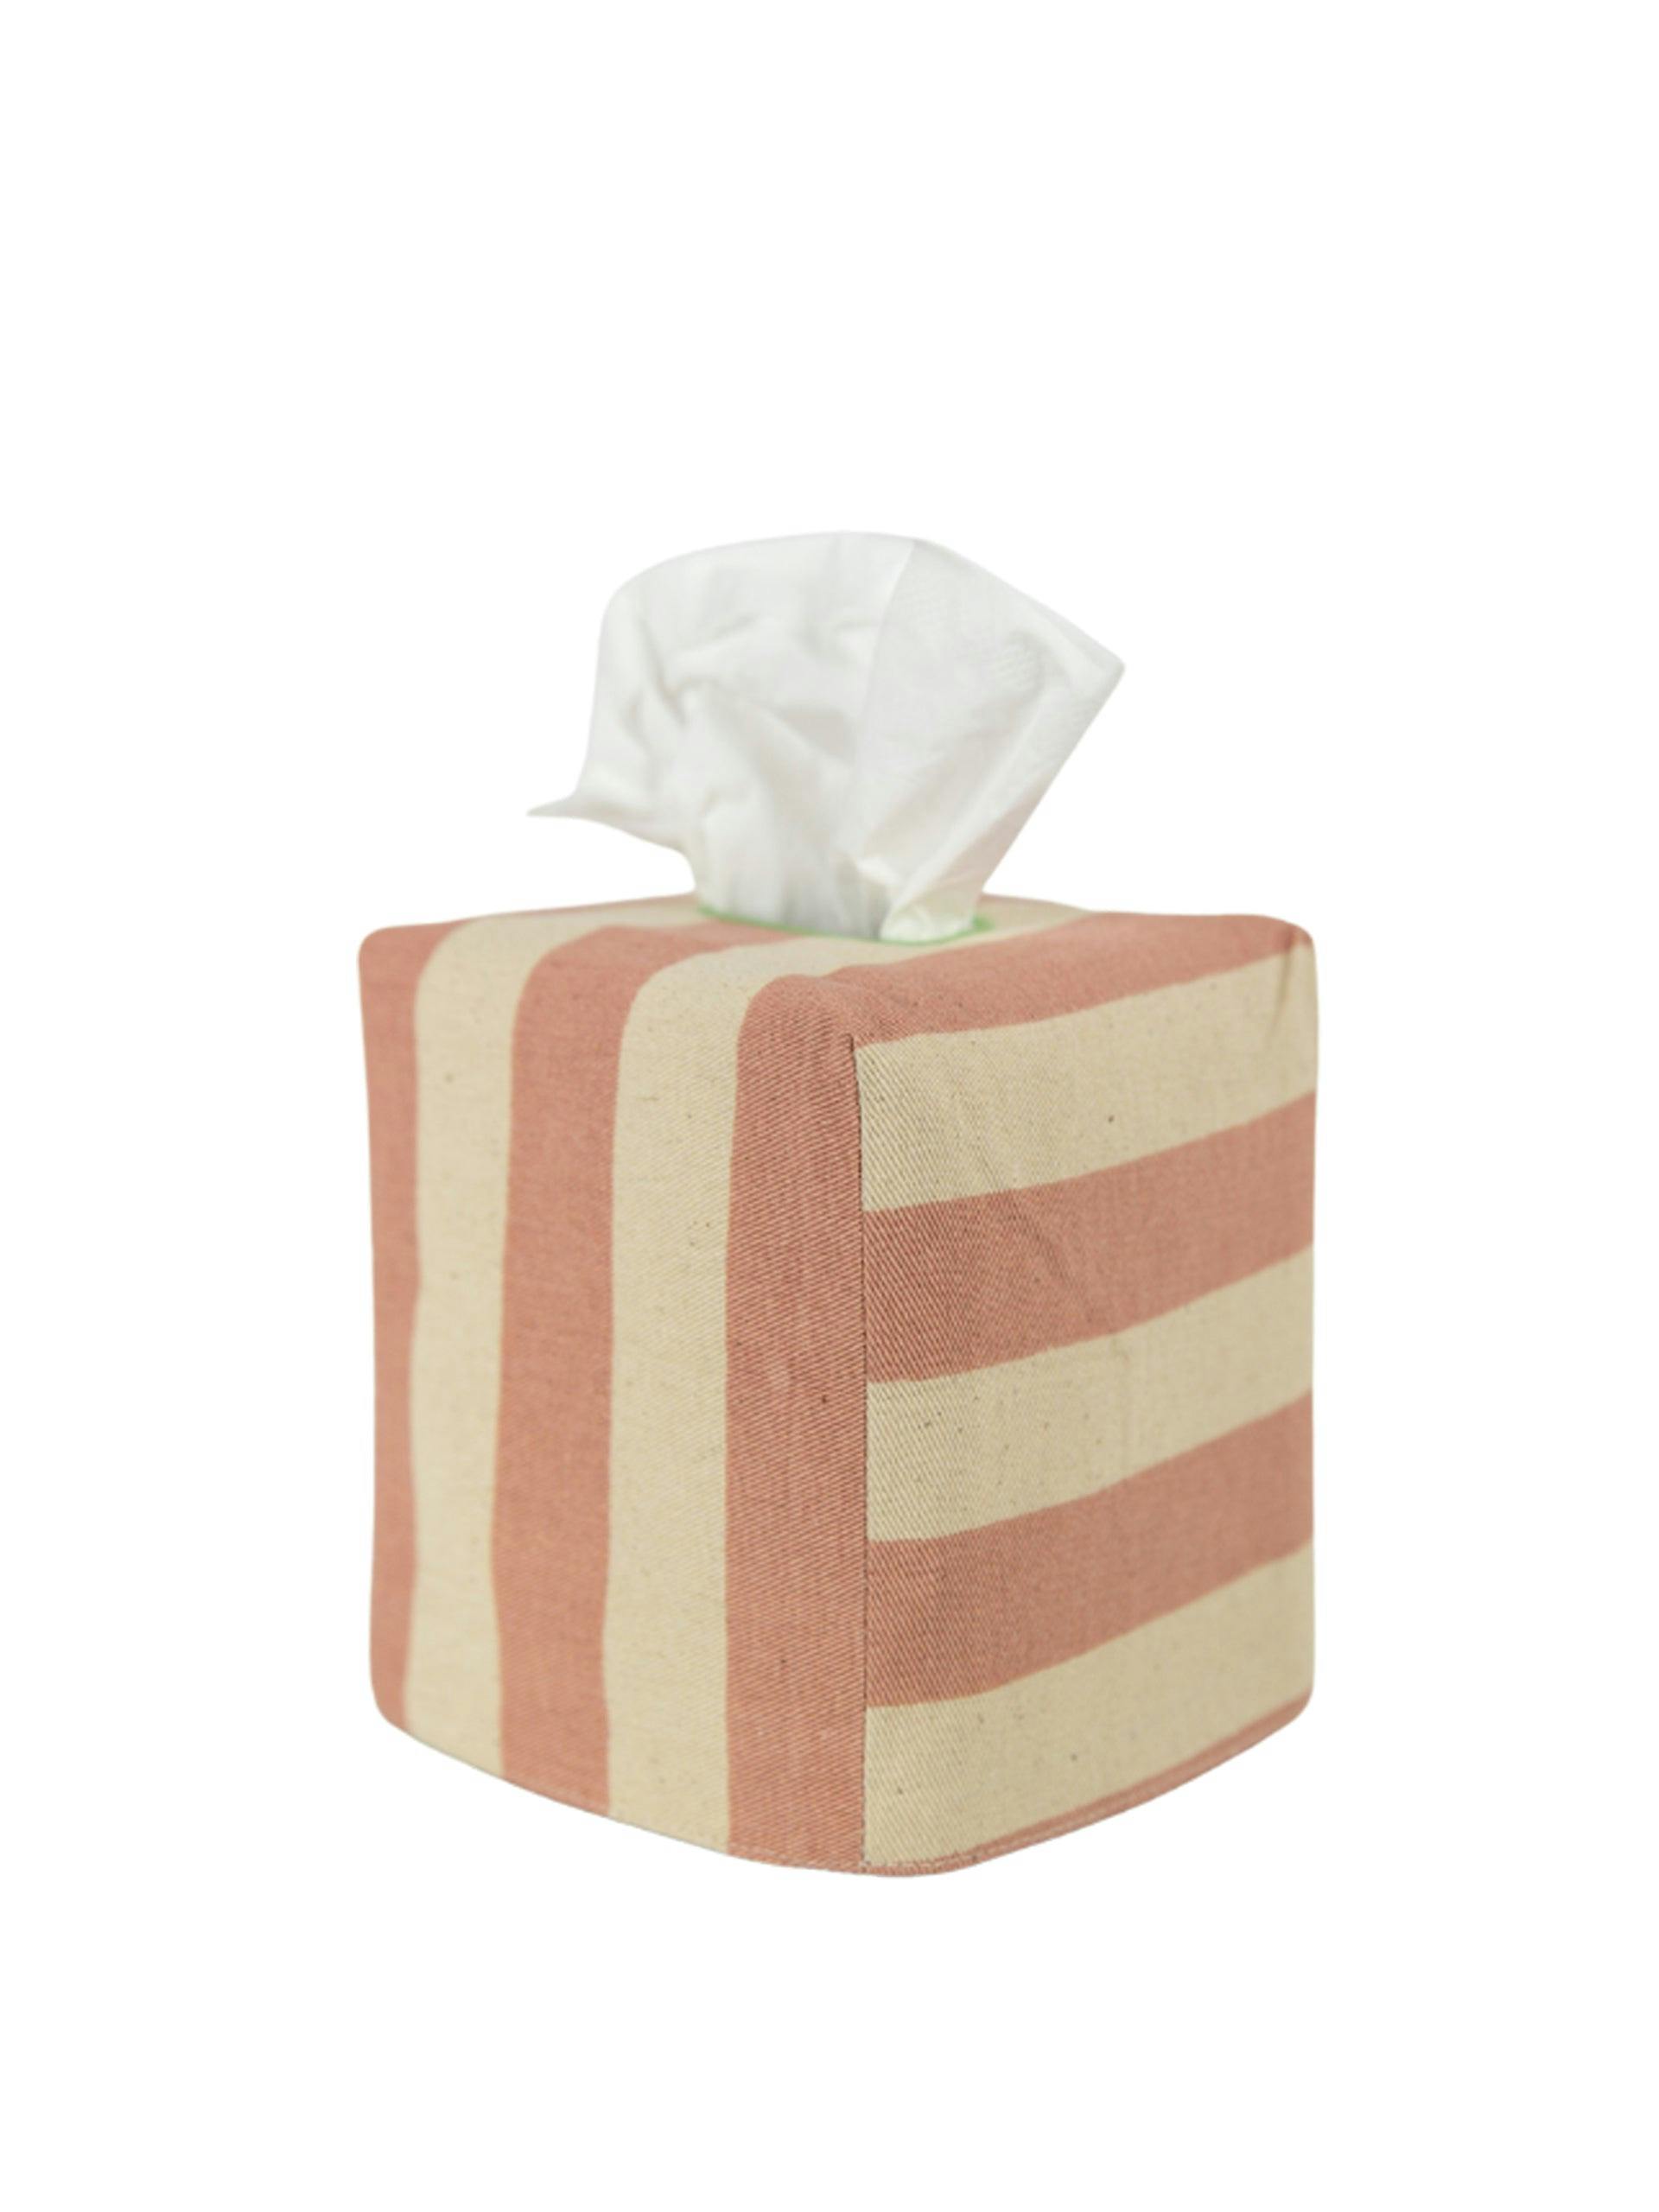 Tangier Stripe square tissue box cover